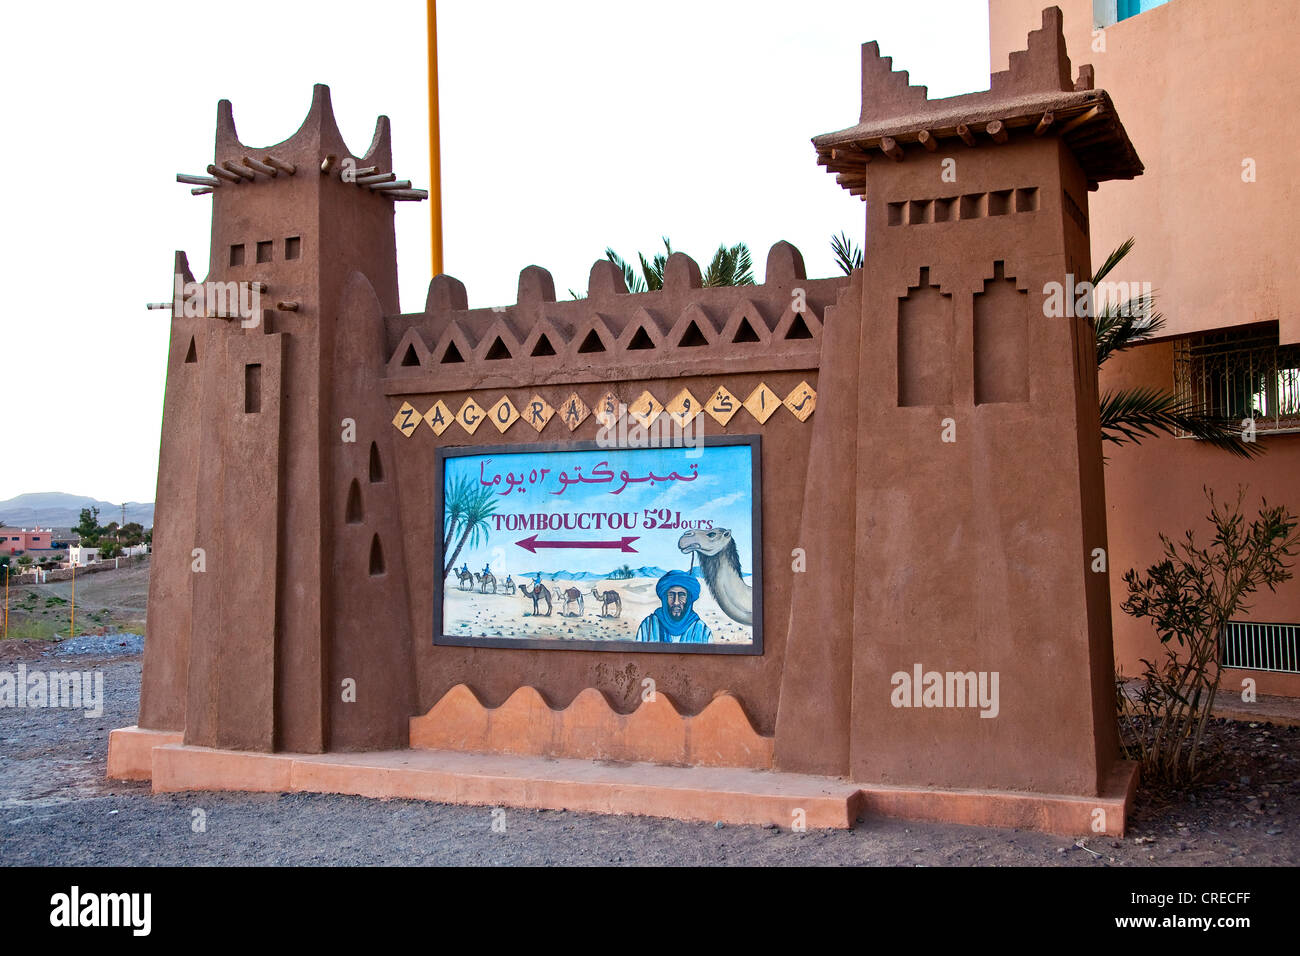 Bestimmungsort-Brett Tombouctou, Timbuktu, 52 Tage zeigen die historischen Karawanenstraße durch die Sahara Wüste, Draa-Tal Stockfoto